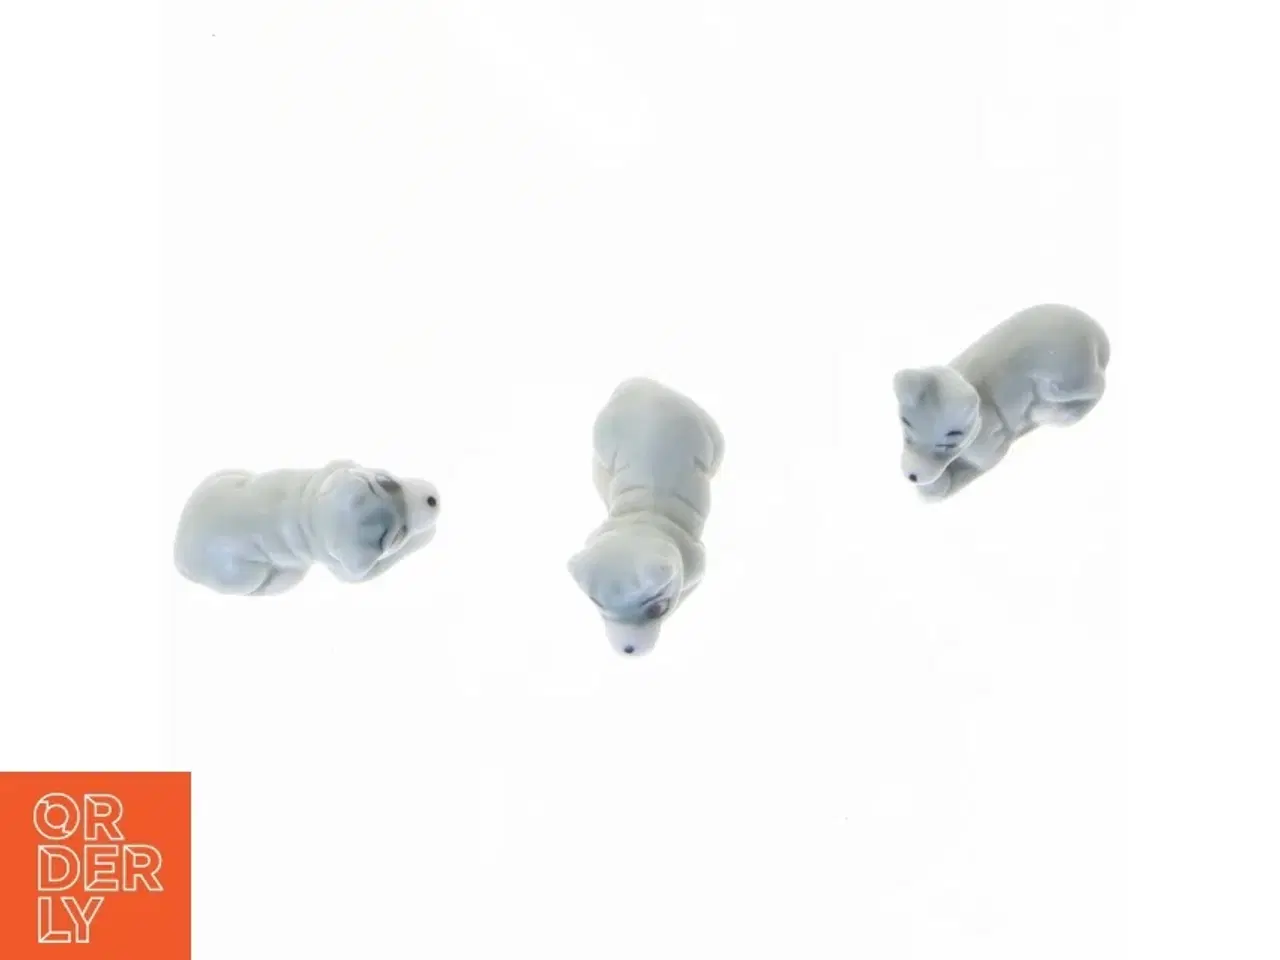 Billede 2 - Porcelænsfigurer af dyr (str. 3 x 1 cm)